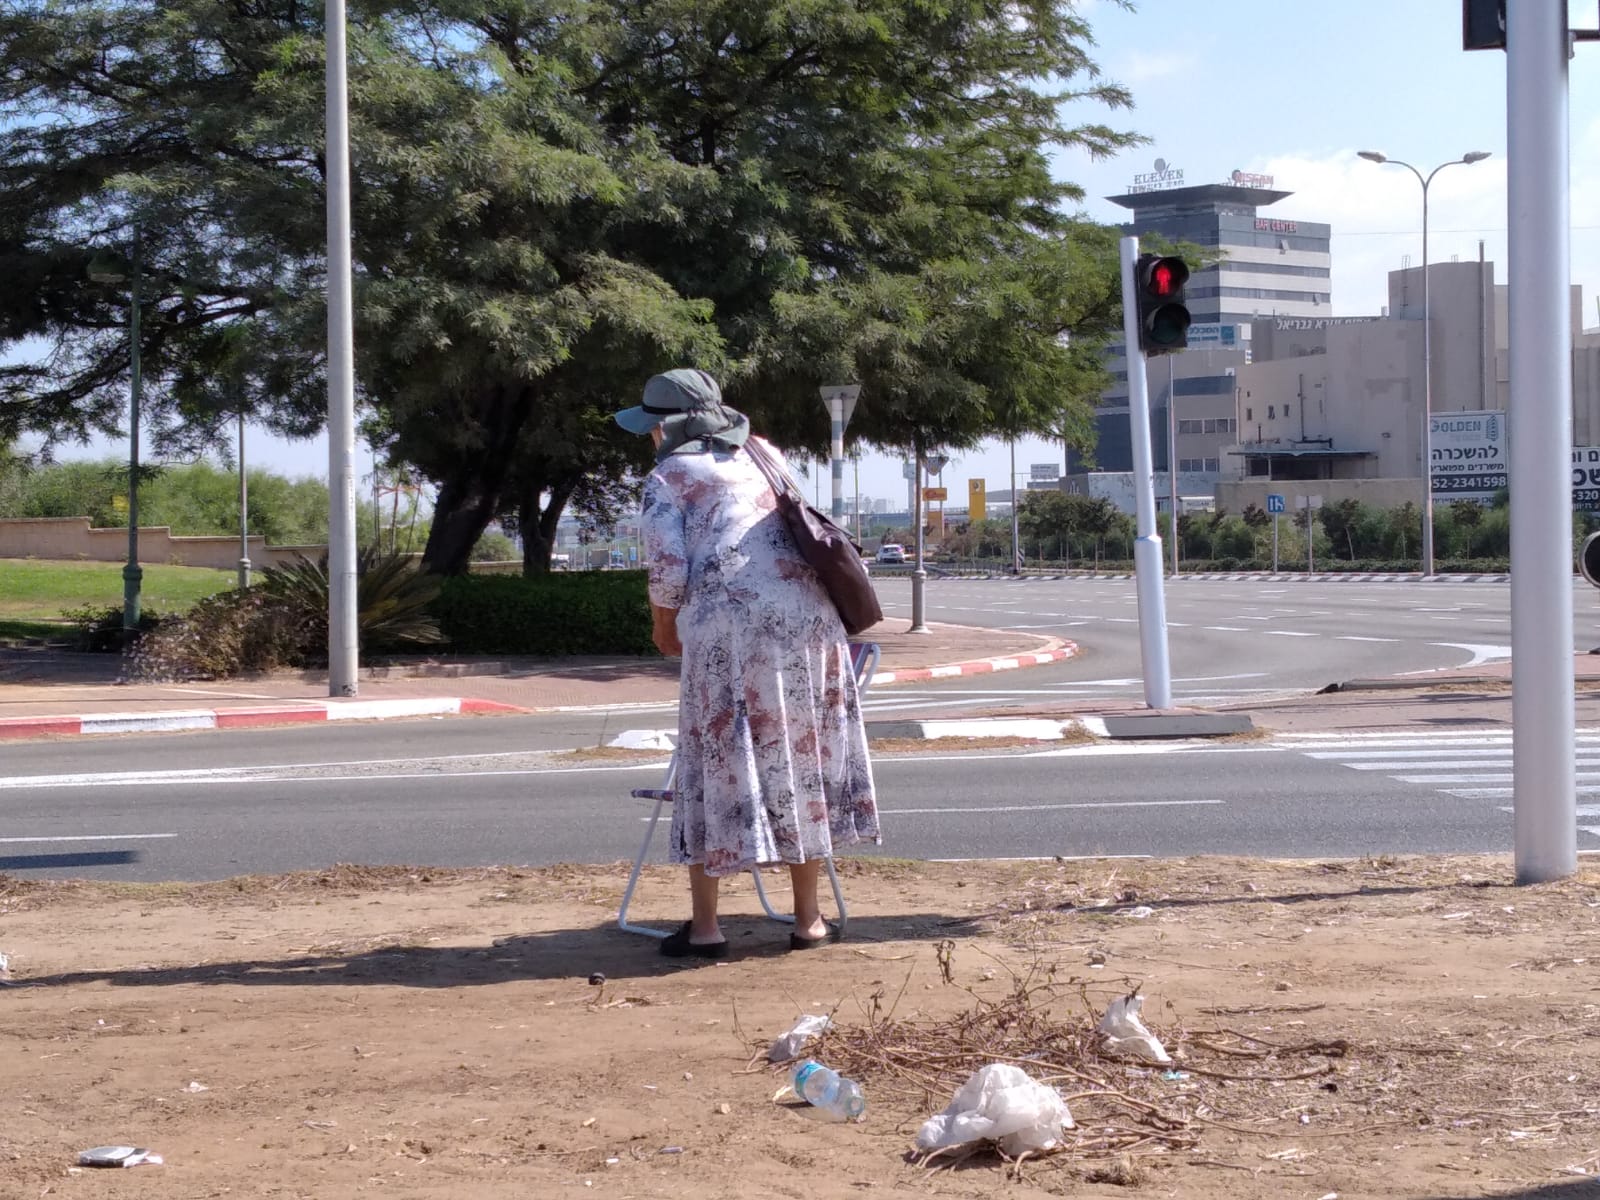 אסתר בת ה-67 שבה לקבץ נדבות בצומת והישועה מאחרת לבוא. צילום: אשדוד נט